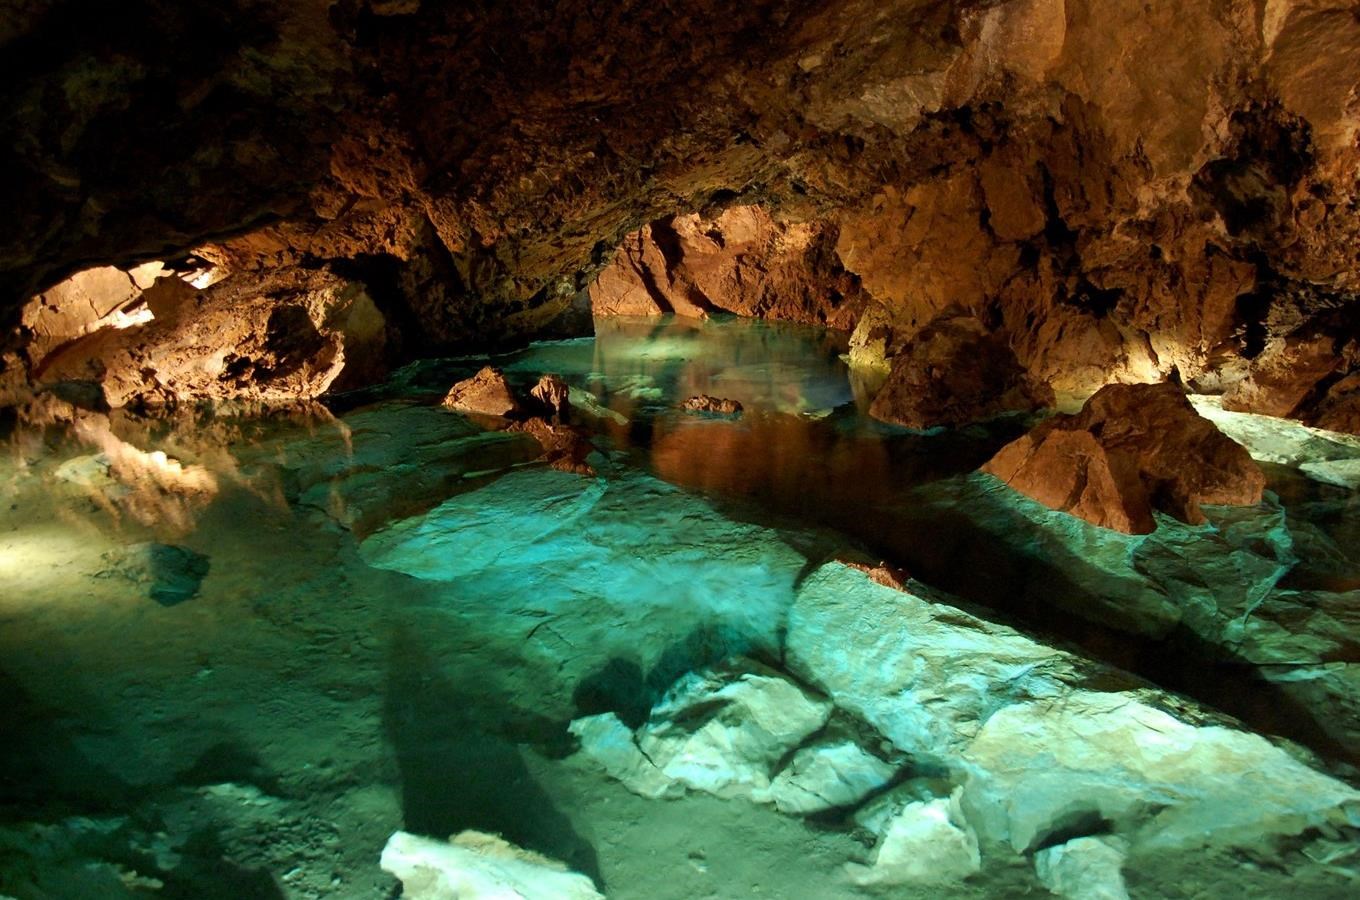 Bozkovské dolomitové jeskyně – jeskyně plné křemene a vody  